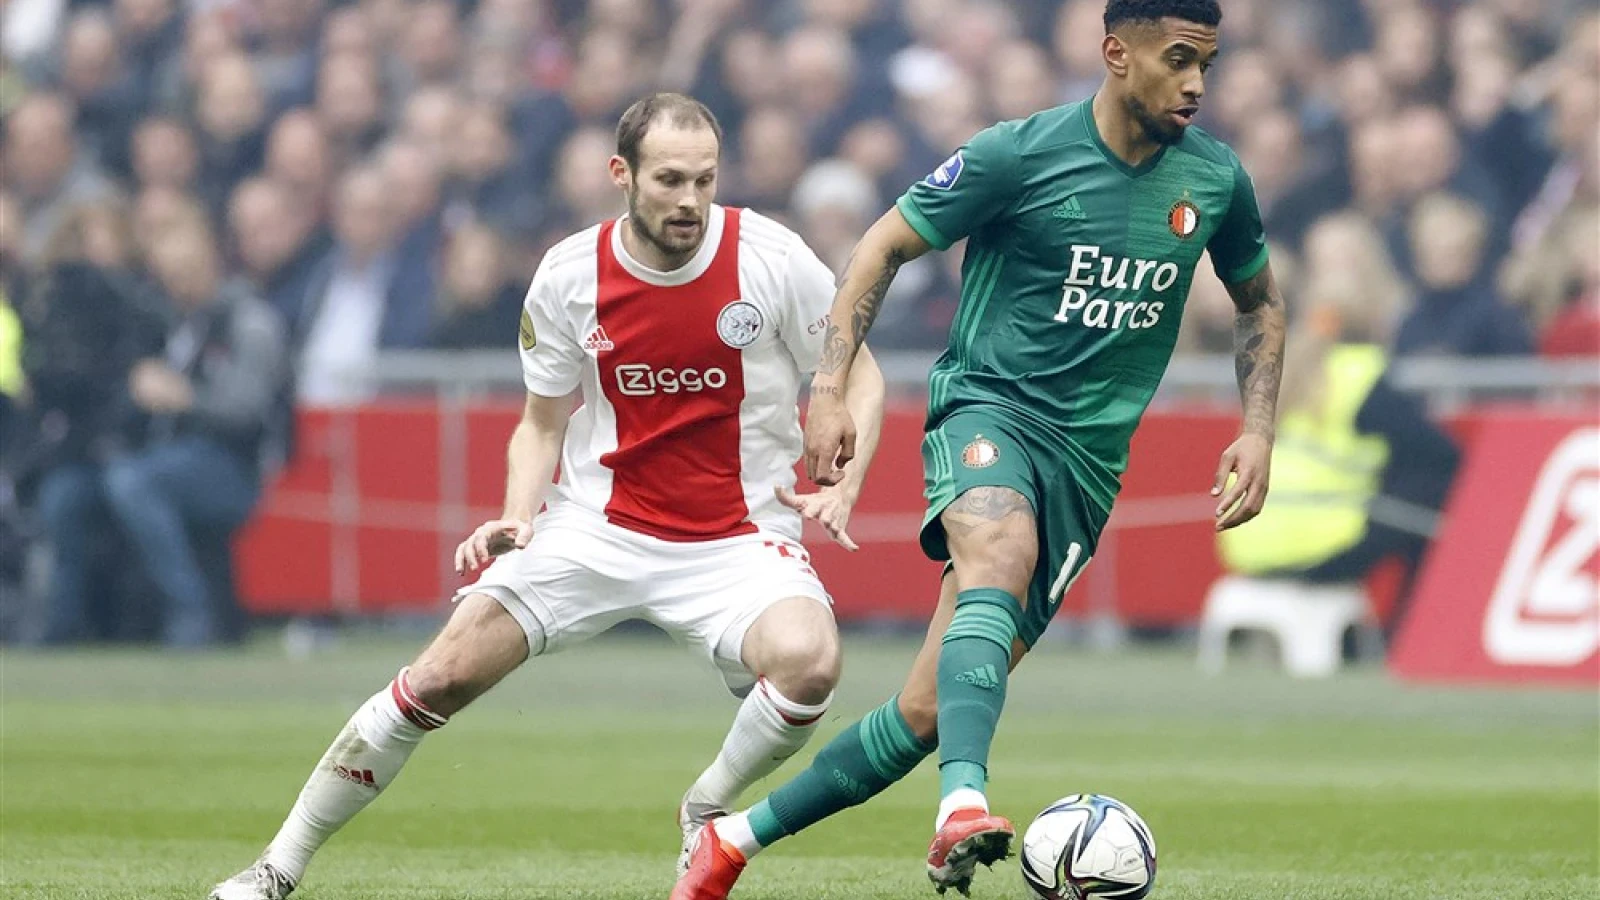 LIVE | Ajax - Feyenoord 3-2 | Einde wedstrijd